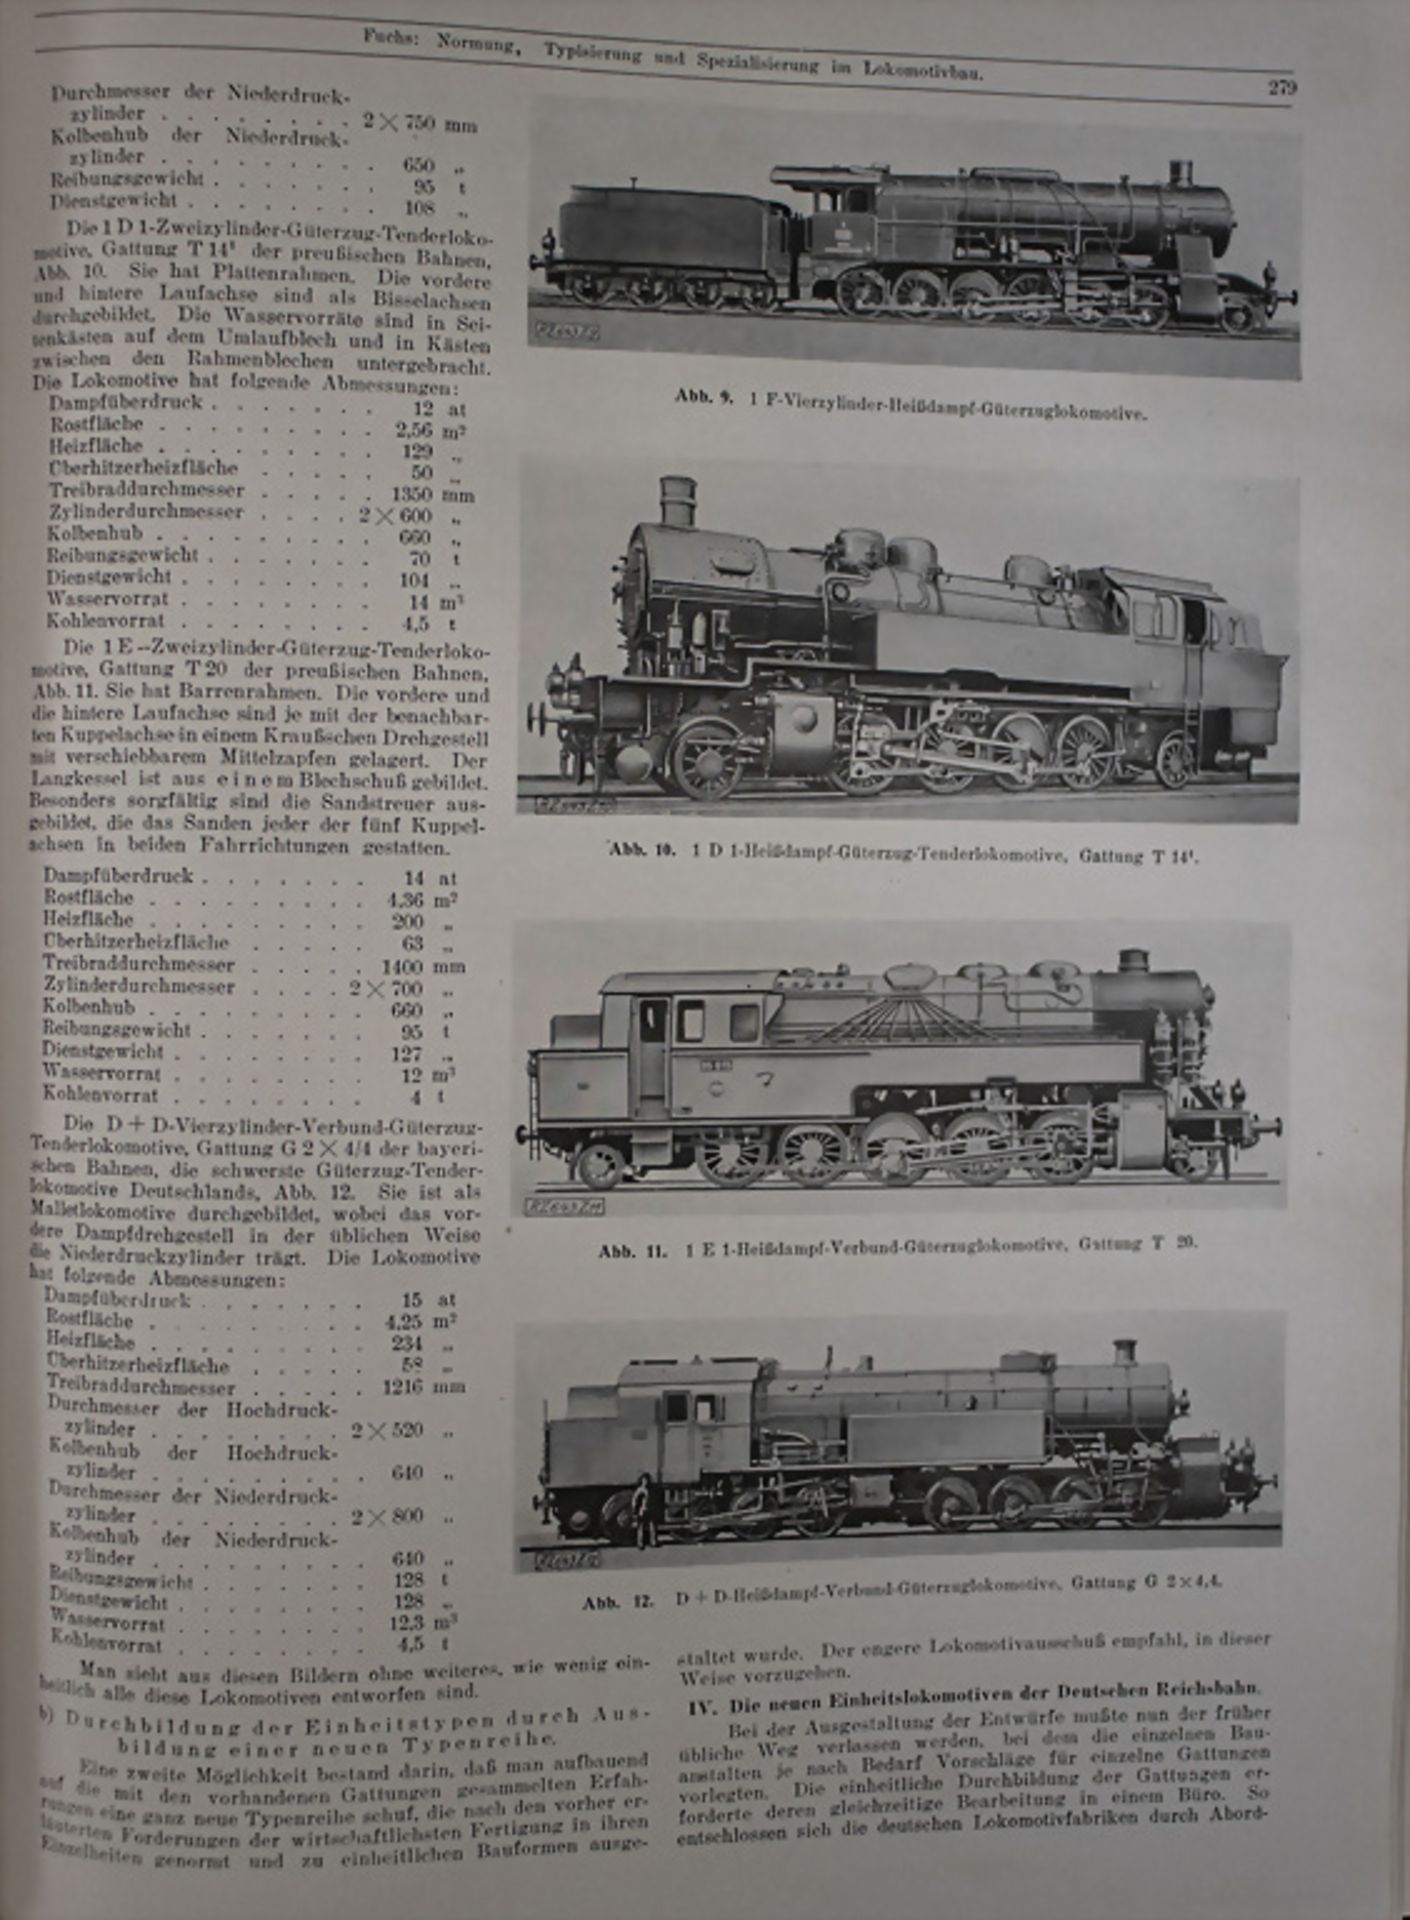 Eisenbahnwesen / Railroading, 1924 - Image 2 of 4